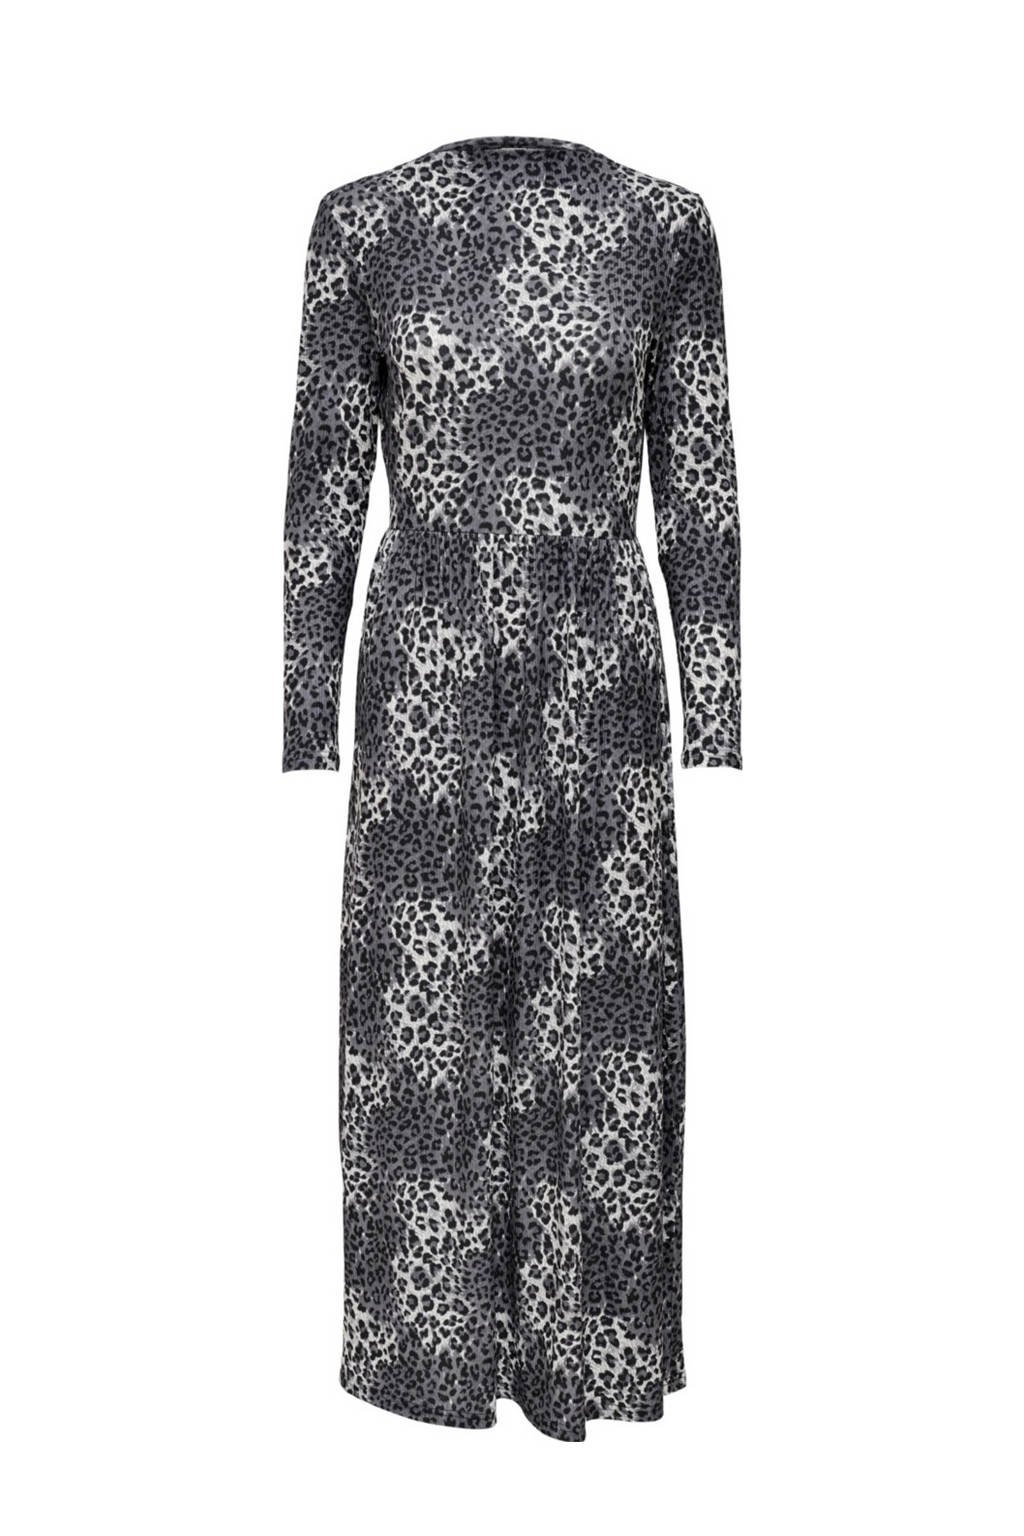 Grijs en zwarte dames JDY maxi jurk met plooien van polyester met panterprint, lange mouwen en ronde hals